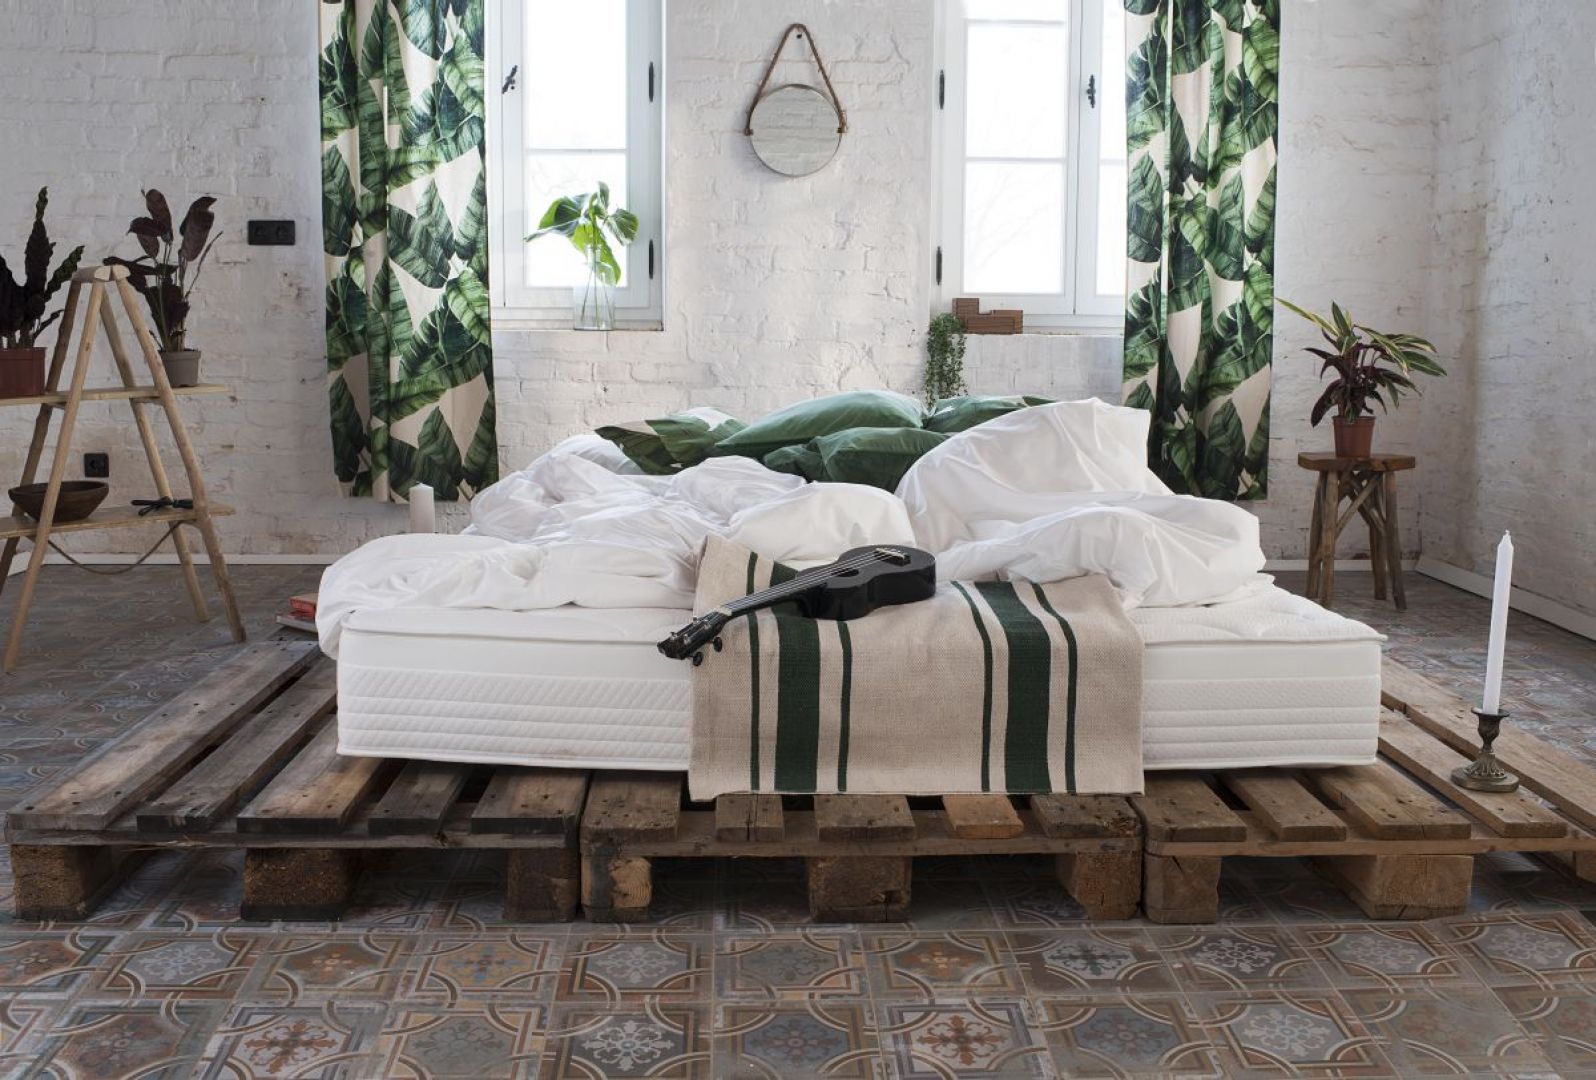 Sypialnia w stylu loftowym. Łóżko z materacem 